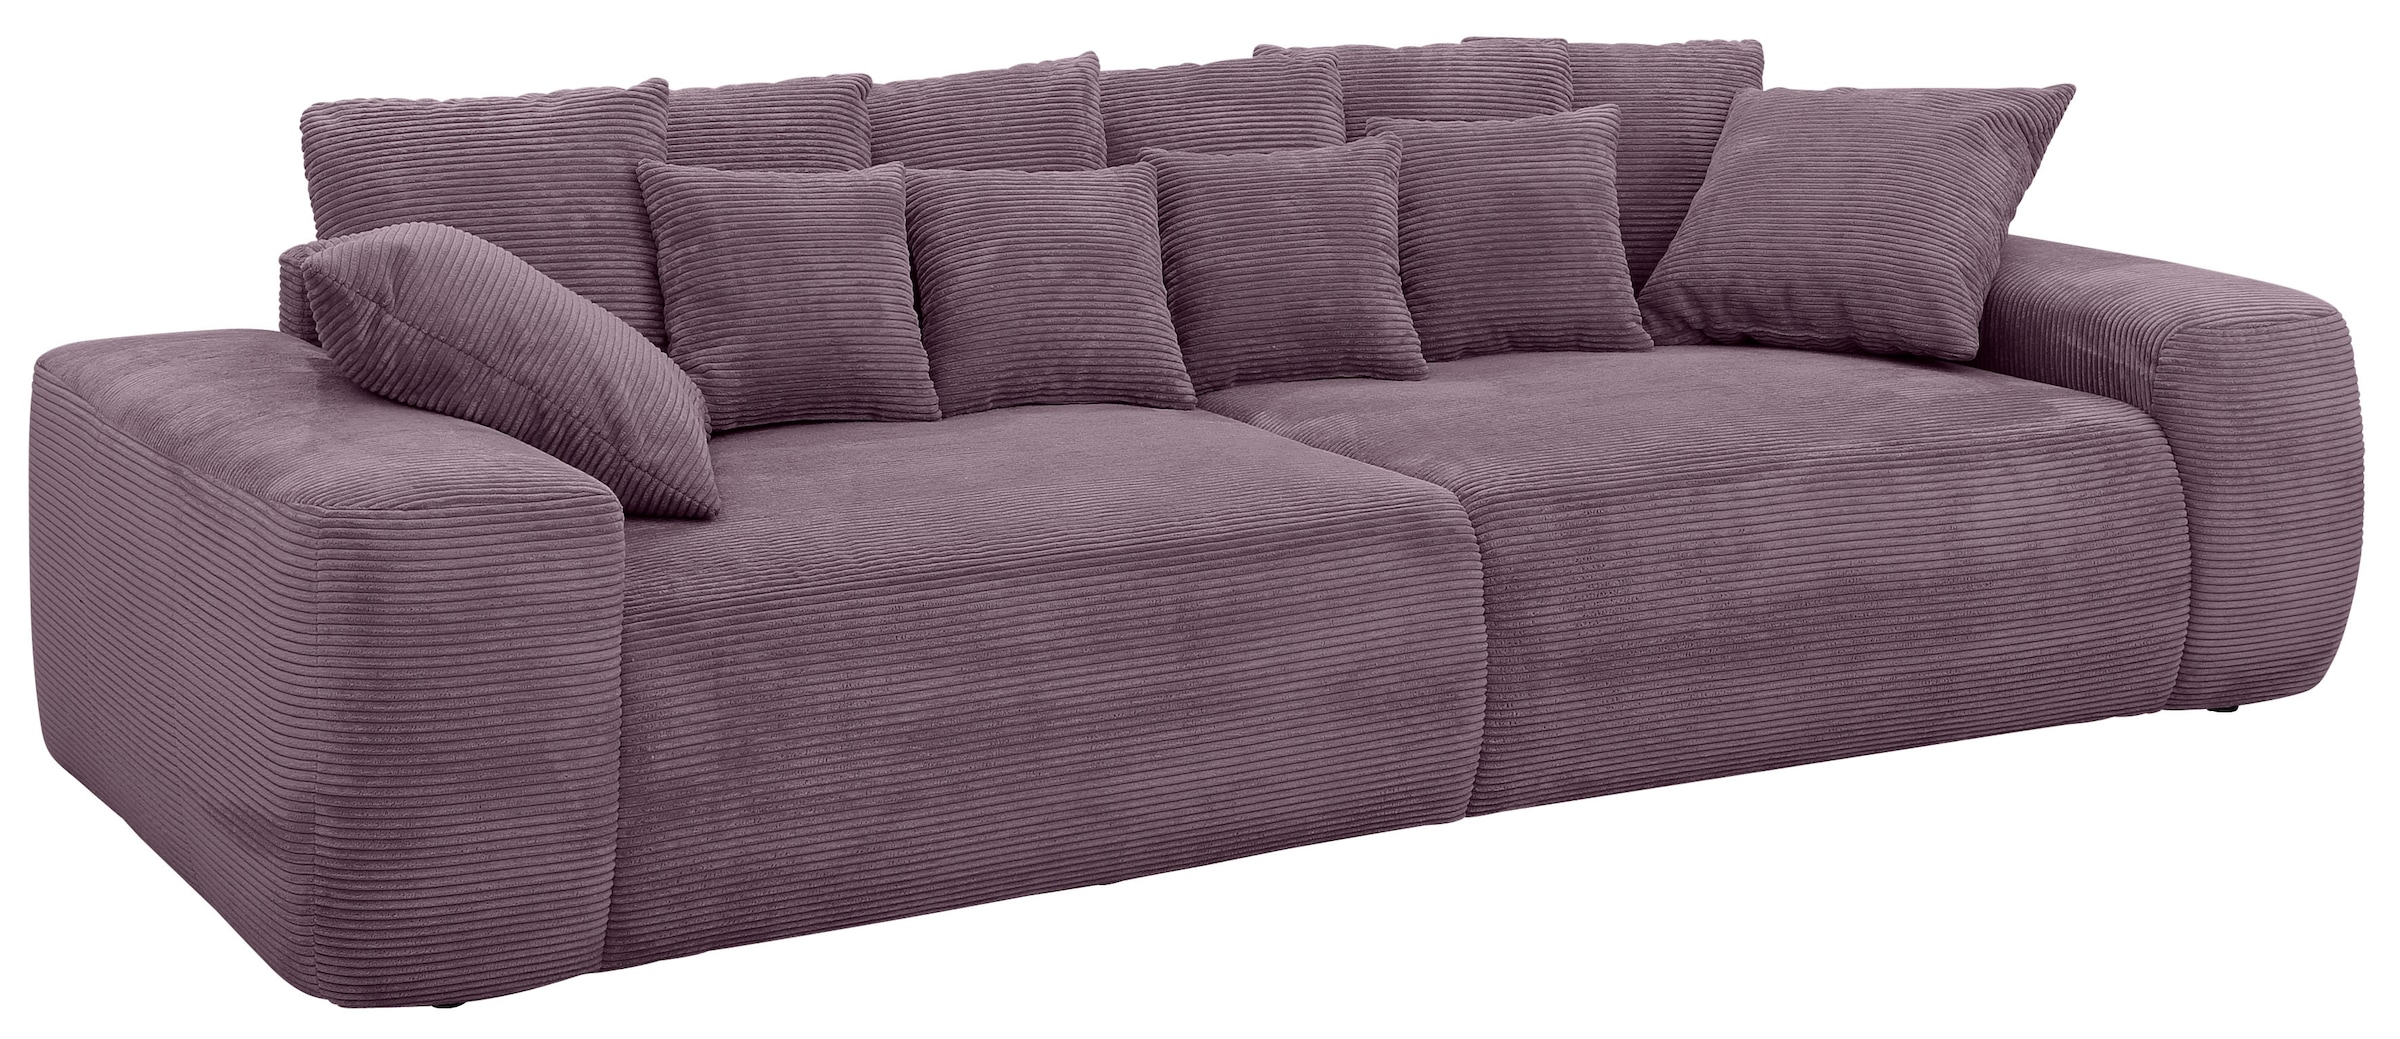 Home affaire Big-Sofa »Sundance«, Polsterung für bis zu 140 kg pro Sitzfläche, auch mit Cord-Bezug